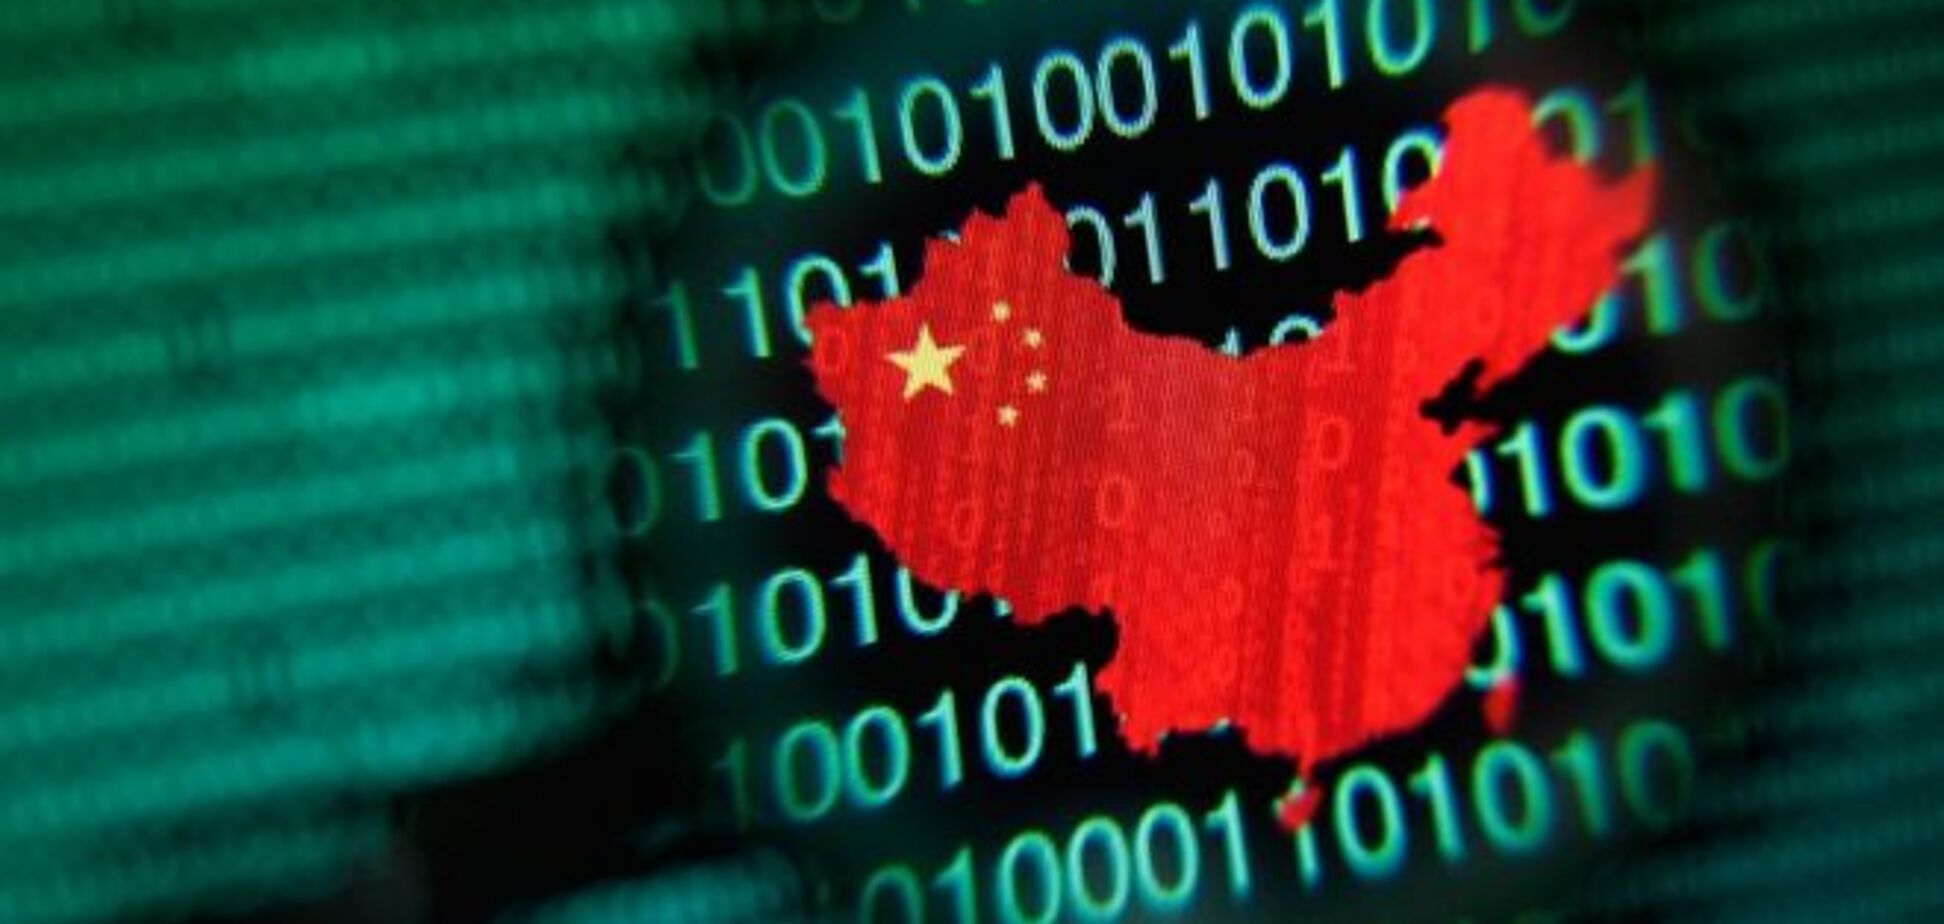 Китайские хакеры украли личные данные армии США